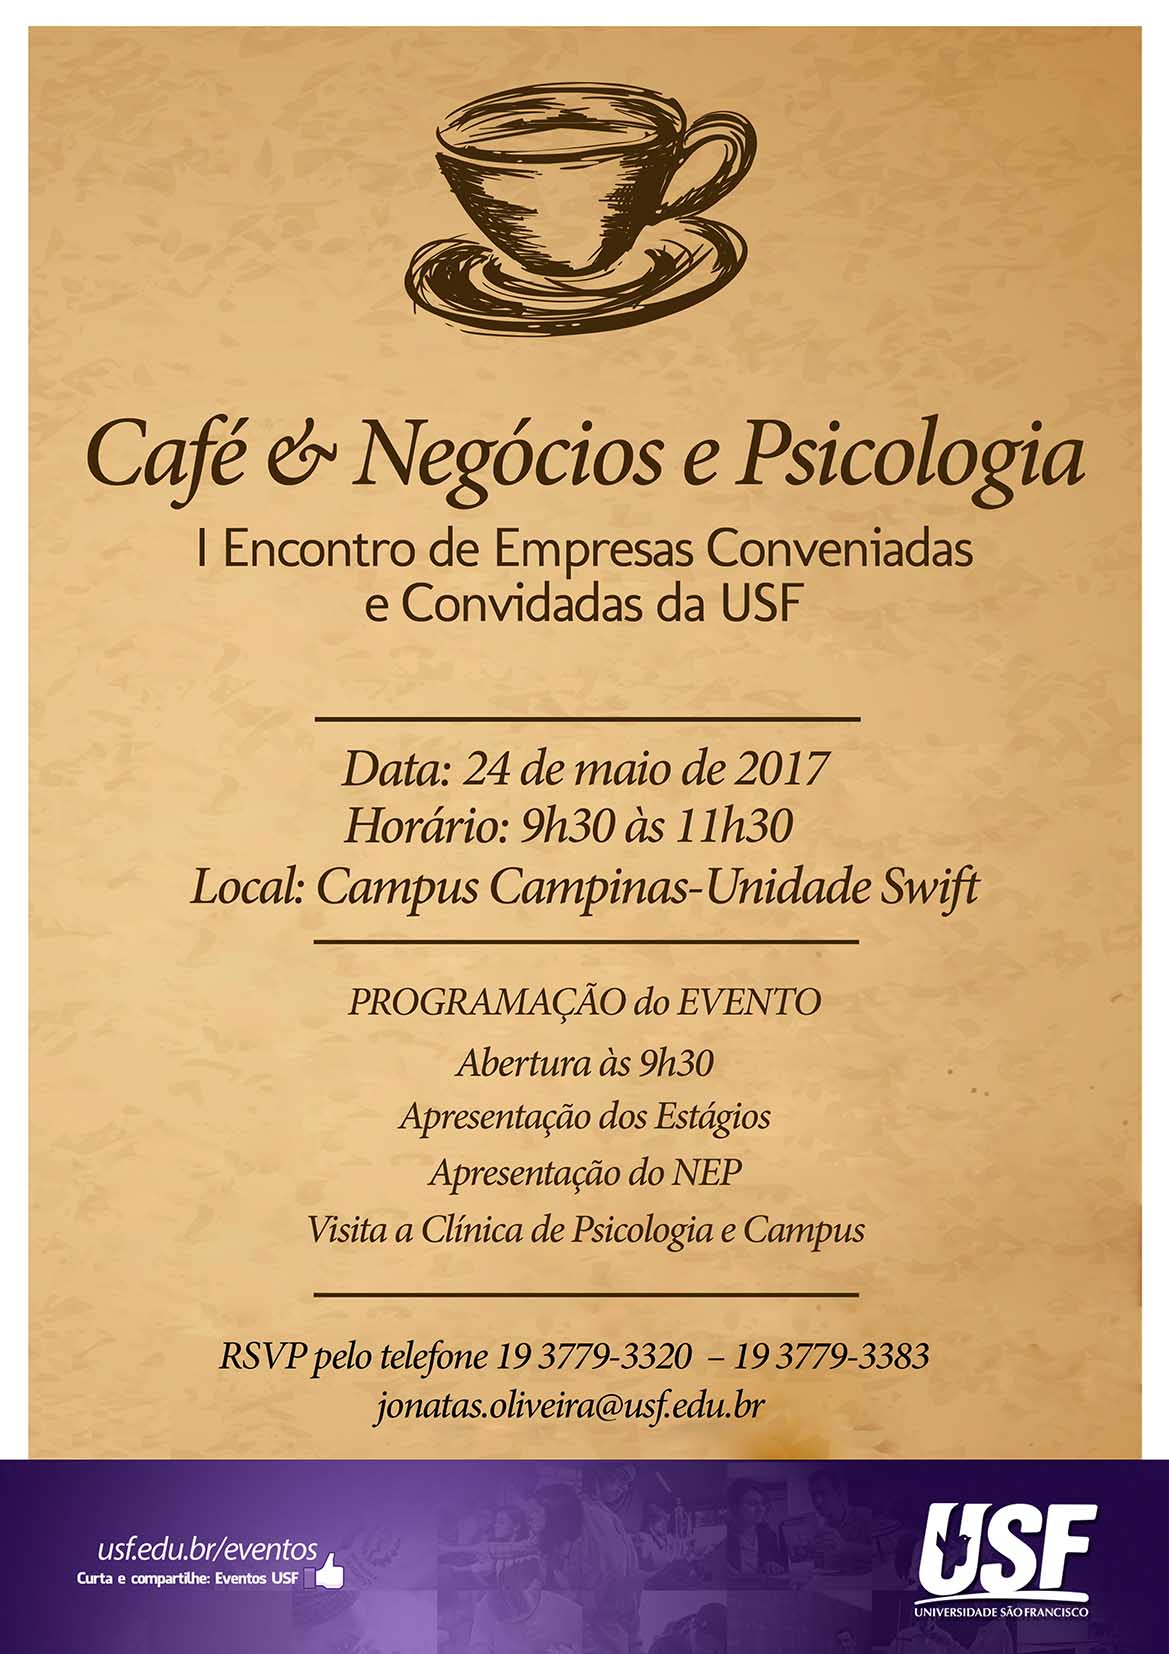 Café & Negócios e Psicologia 